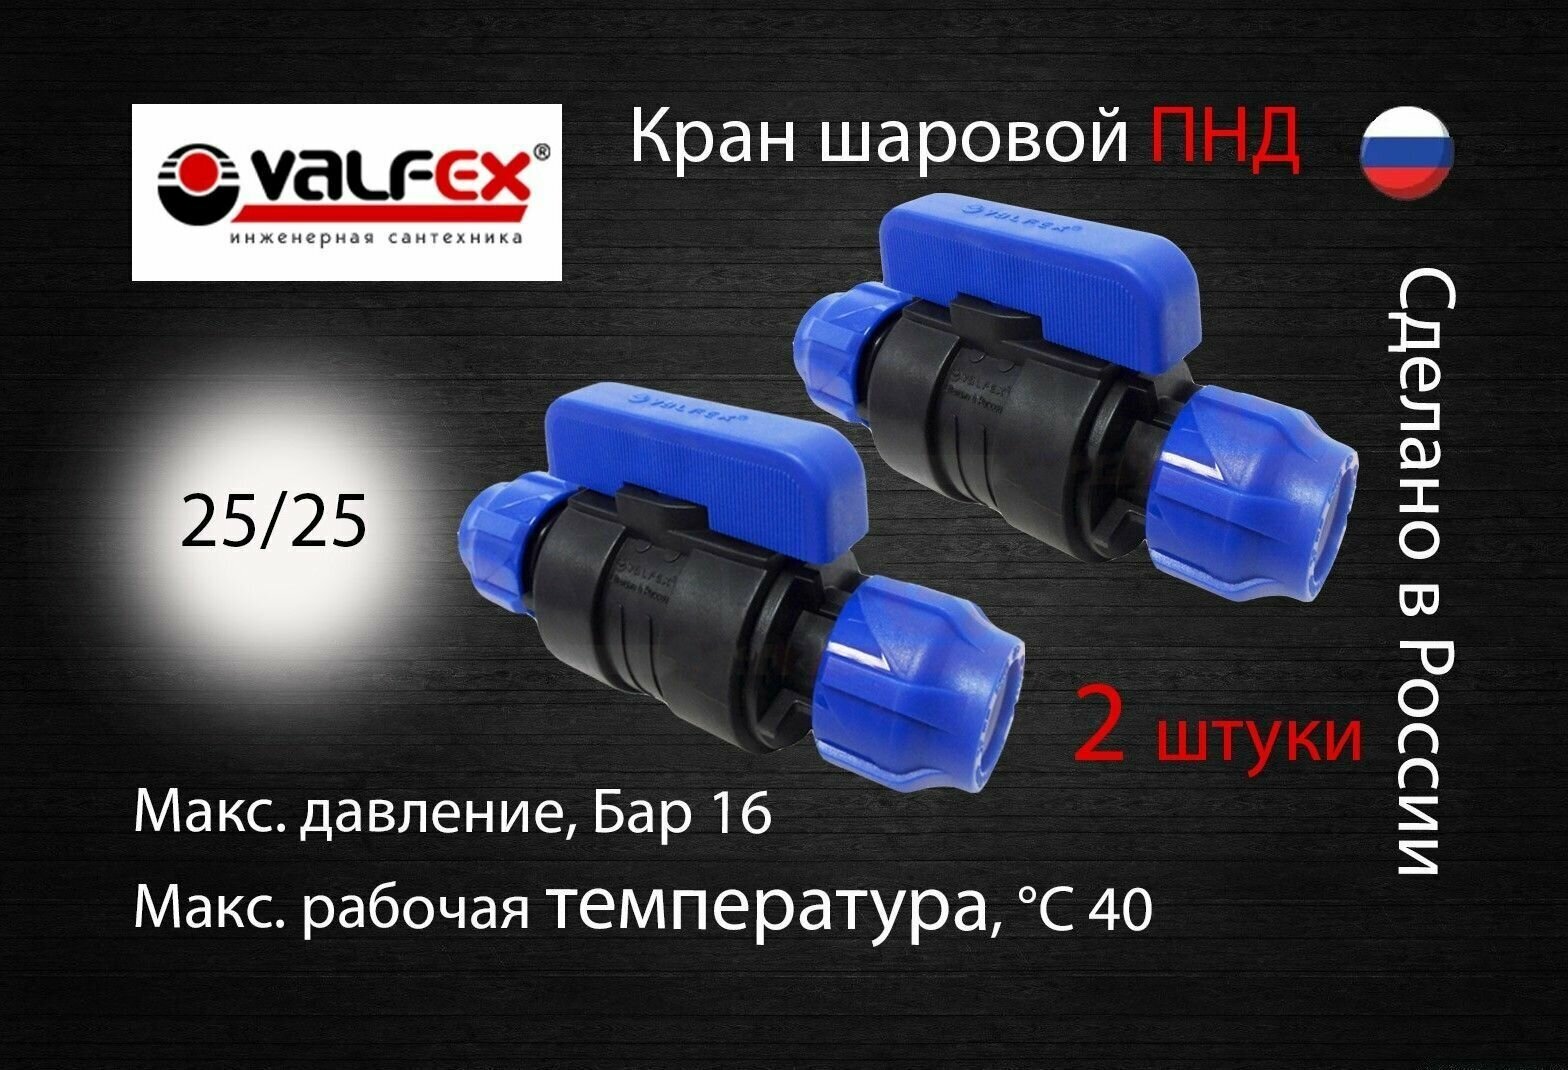 Кран шаровой ПНД разборный 25х25 Valfex (2 шт) / Кран ПНД для трубы 25 мм (компрессионные фитинги для полиэтиленовых труб)